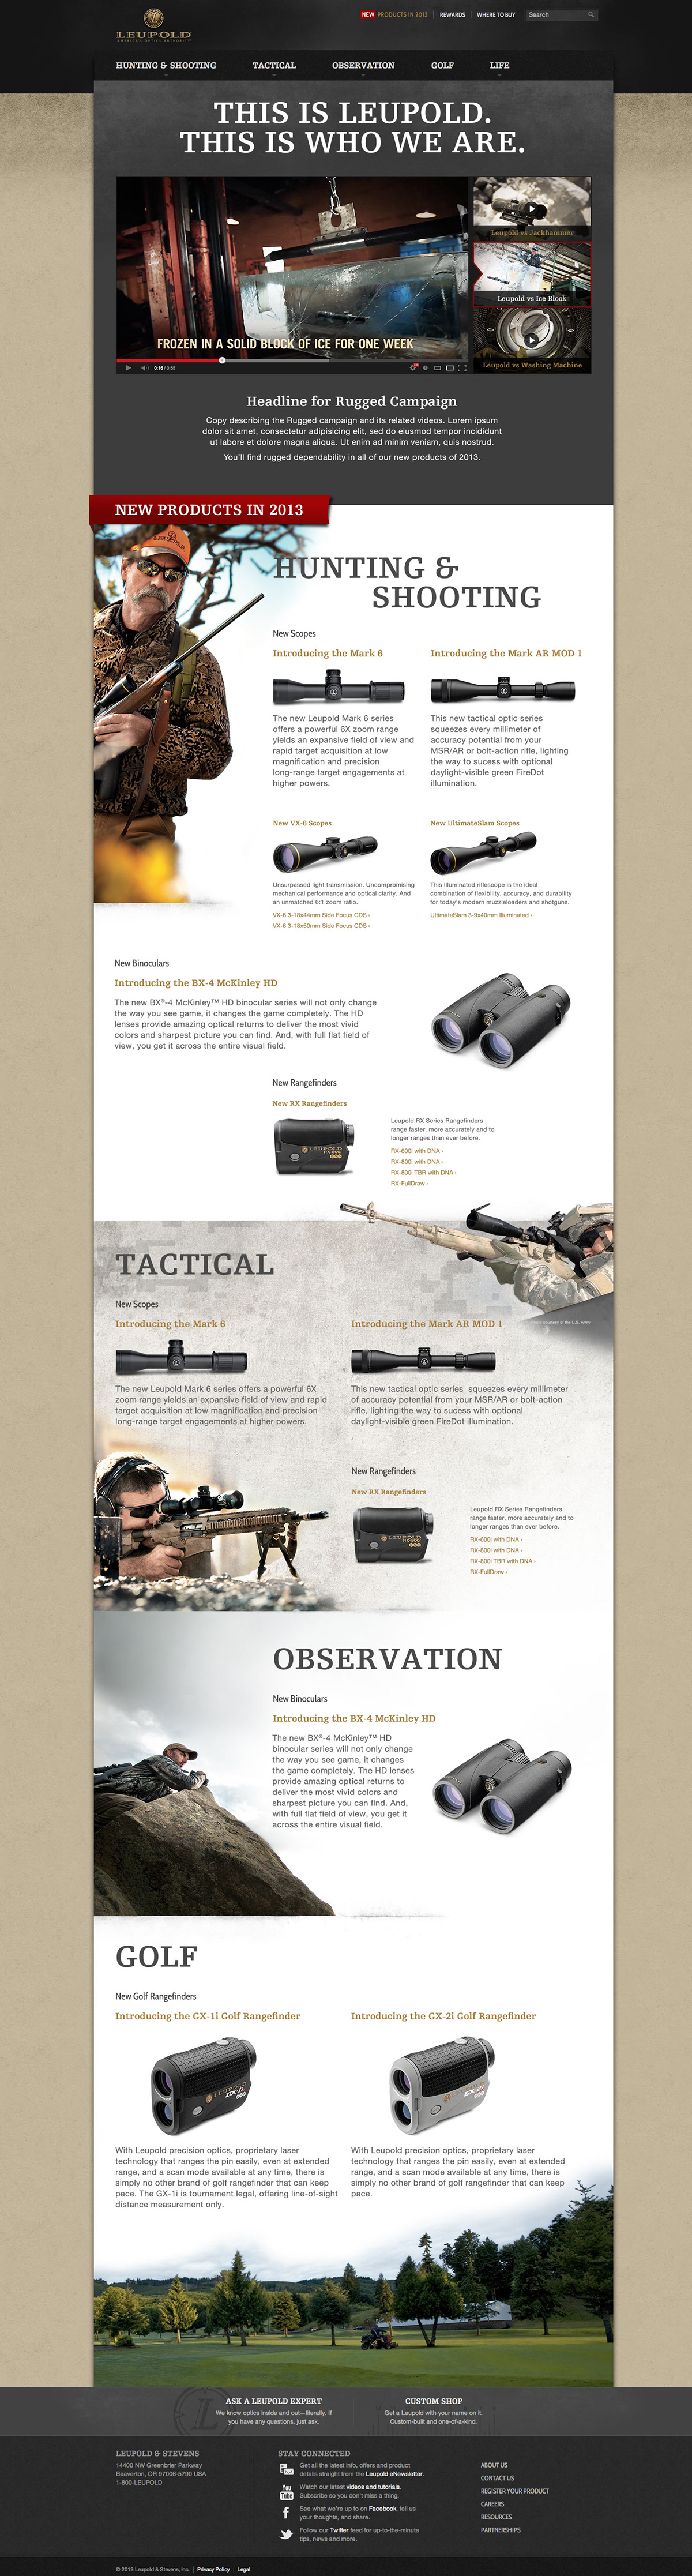 Leupold optics tactical rifle scopes binoculars Responsive